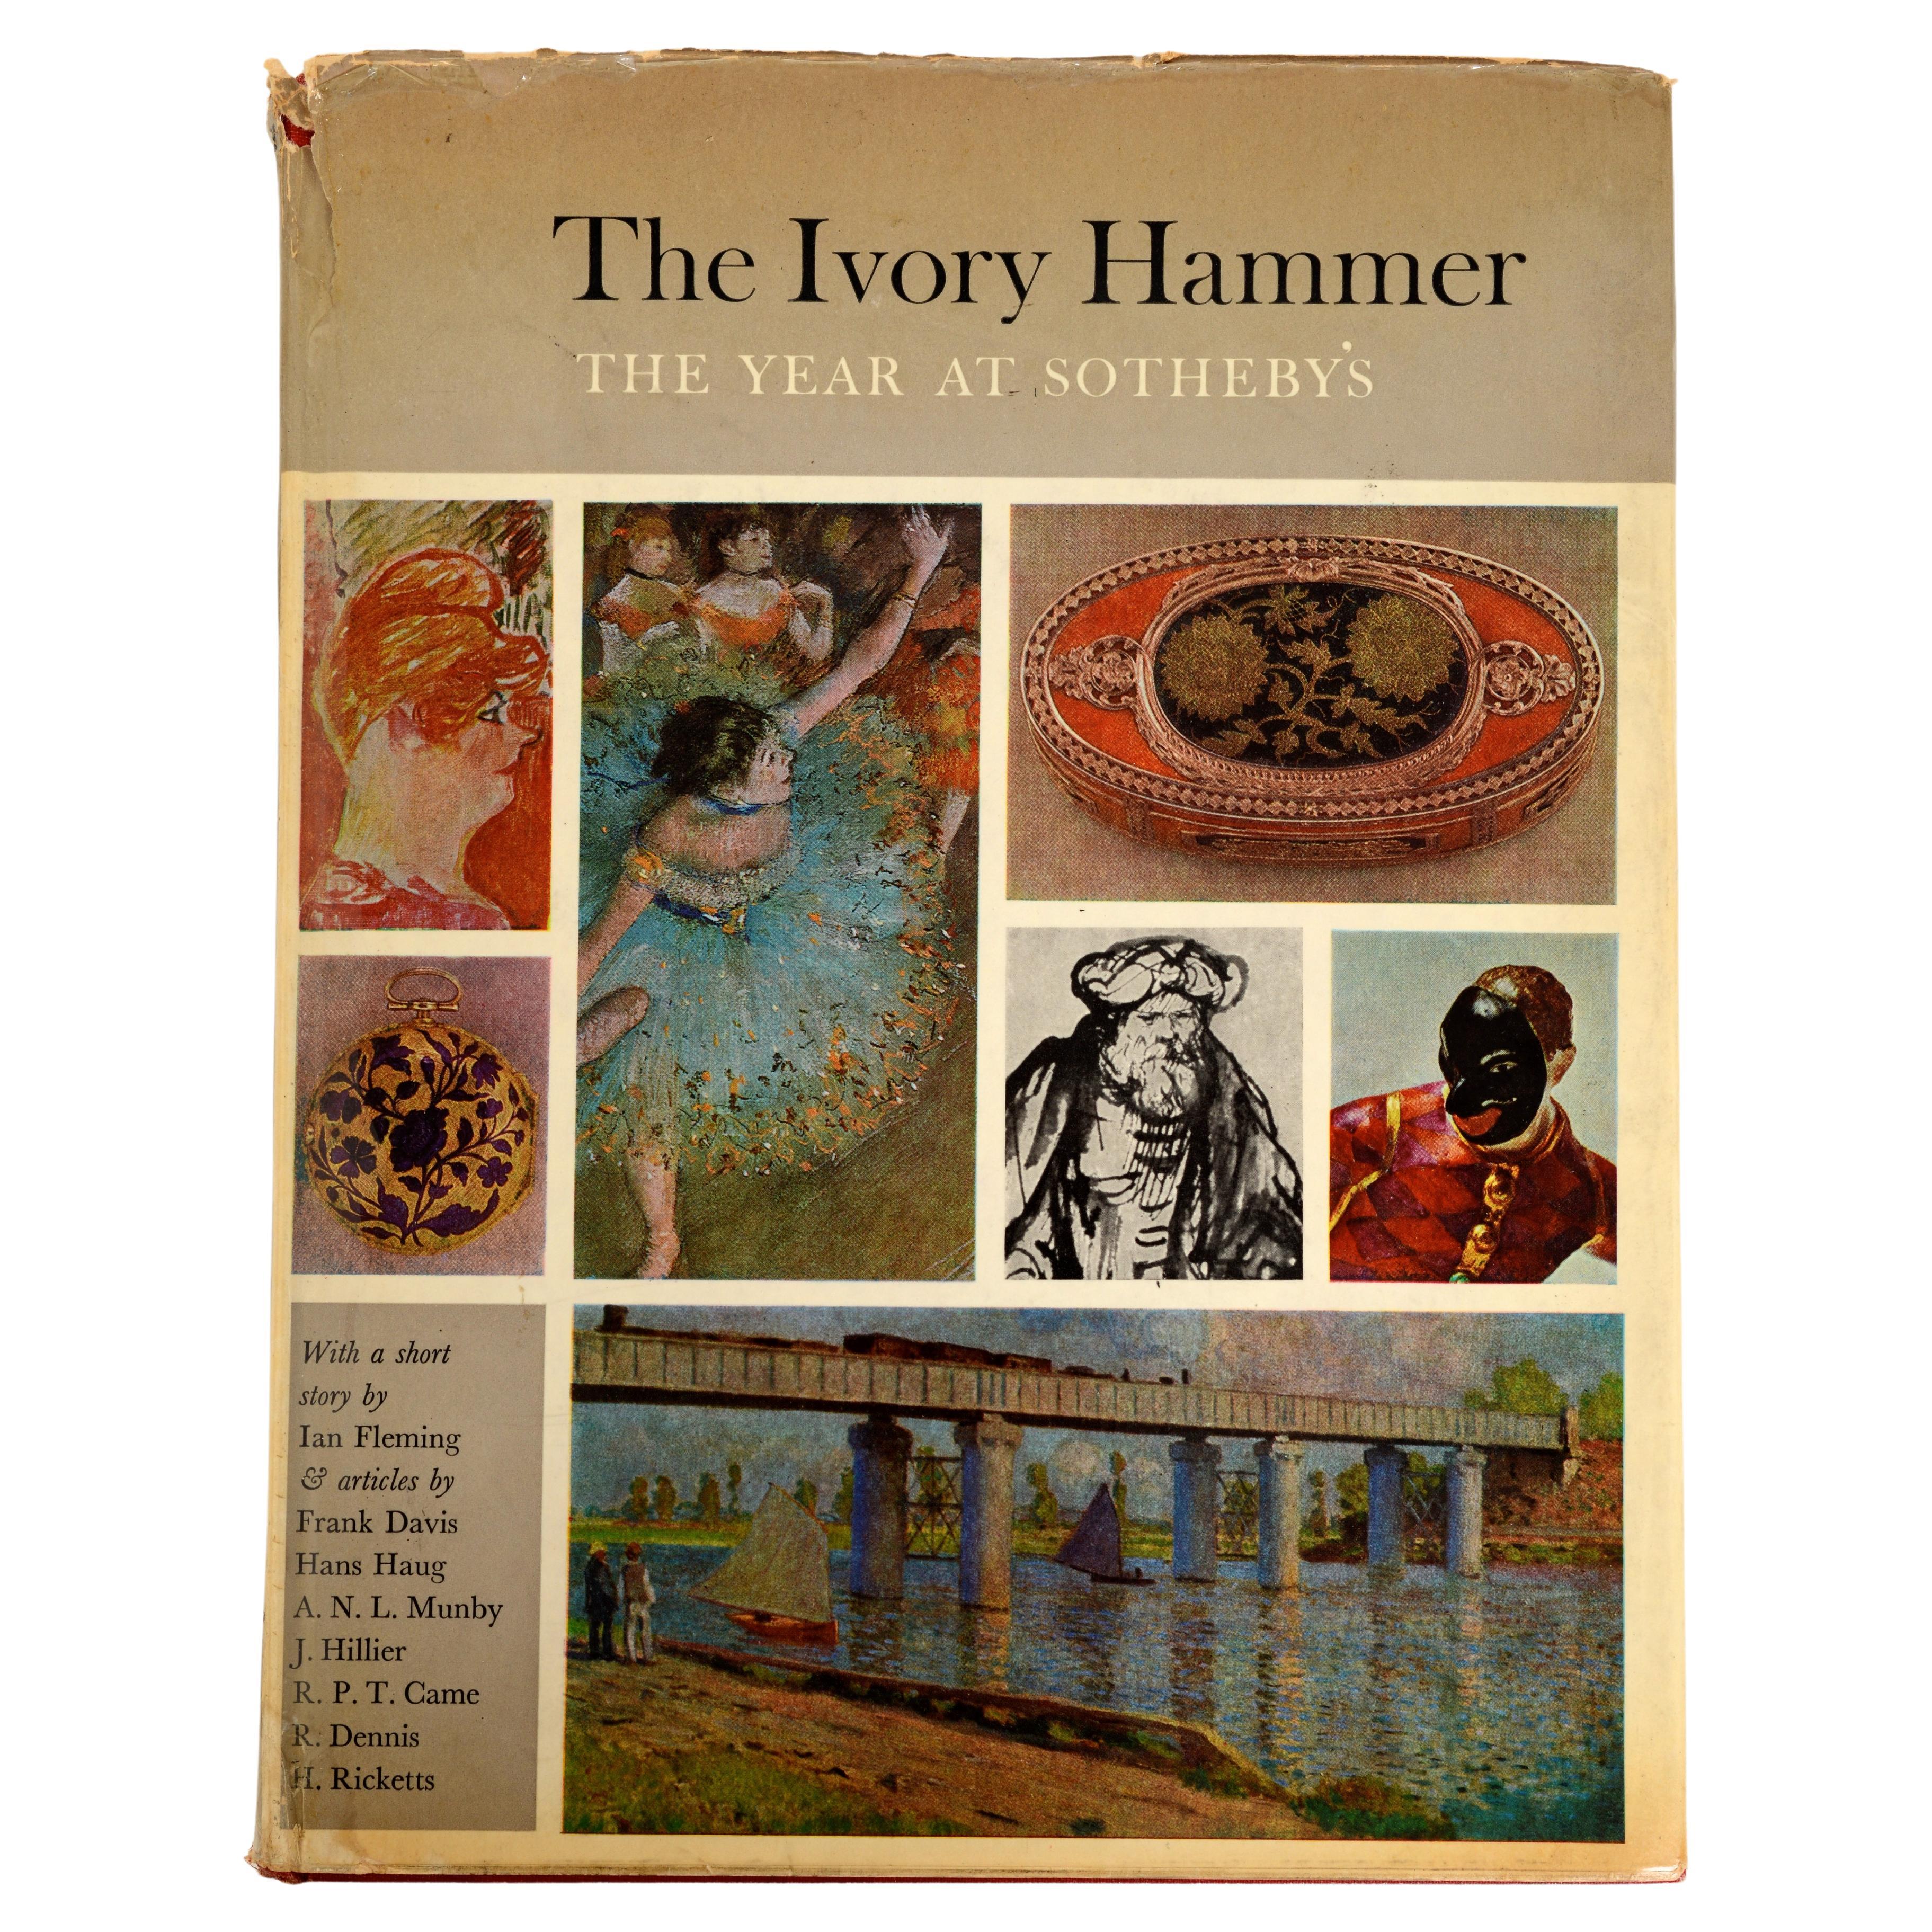 Elfenbeinfarbener Hammer, Das Jahr bei Sotheby's, 1962-1963, Ian Fleming James Bond Story